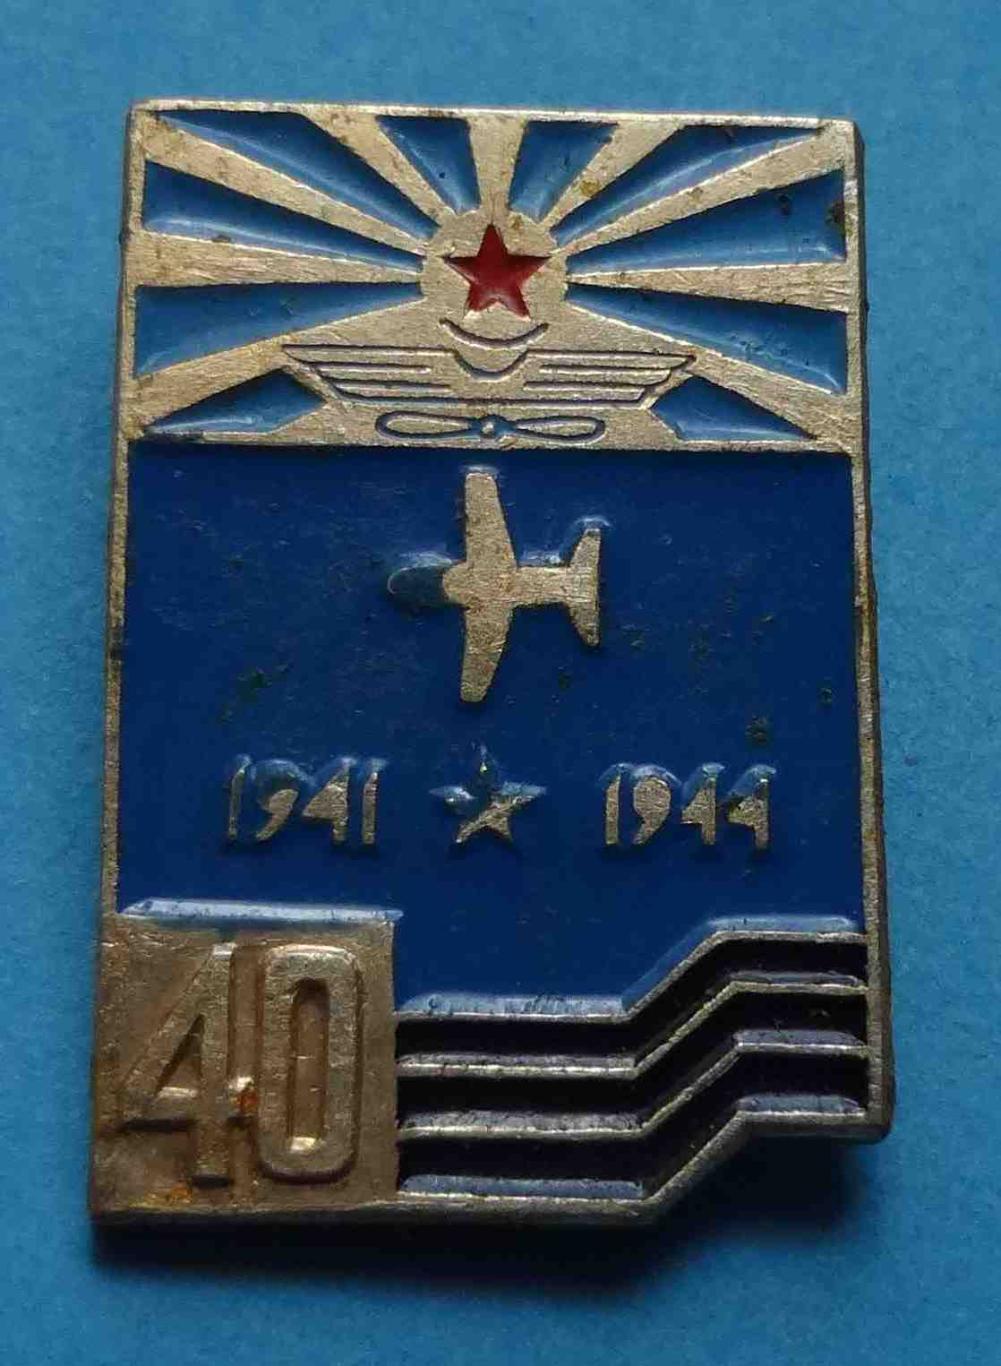 40 лет освобождения Заполярье 1941-1944 Авиация (17)